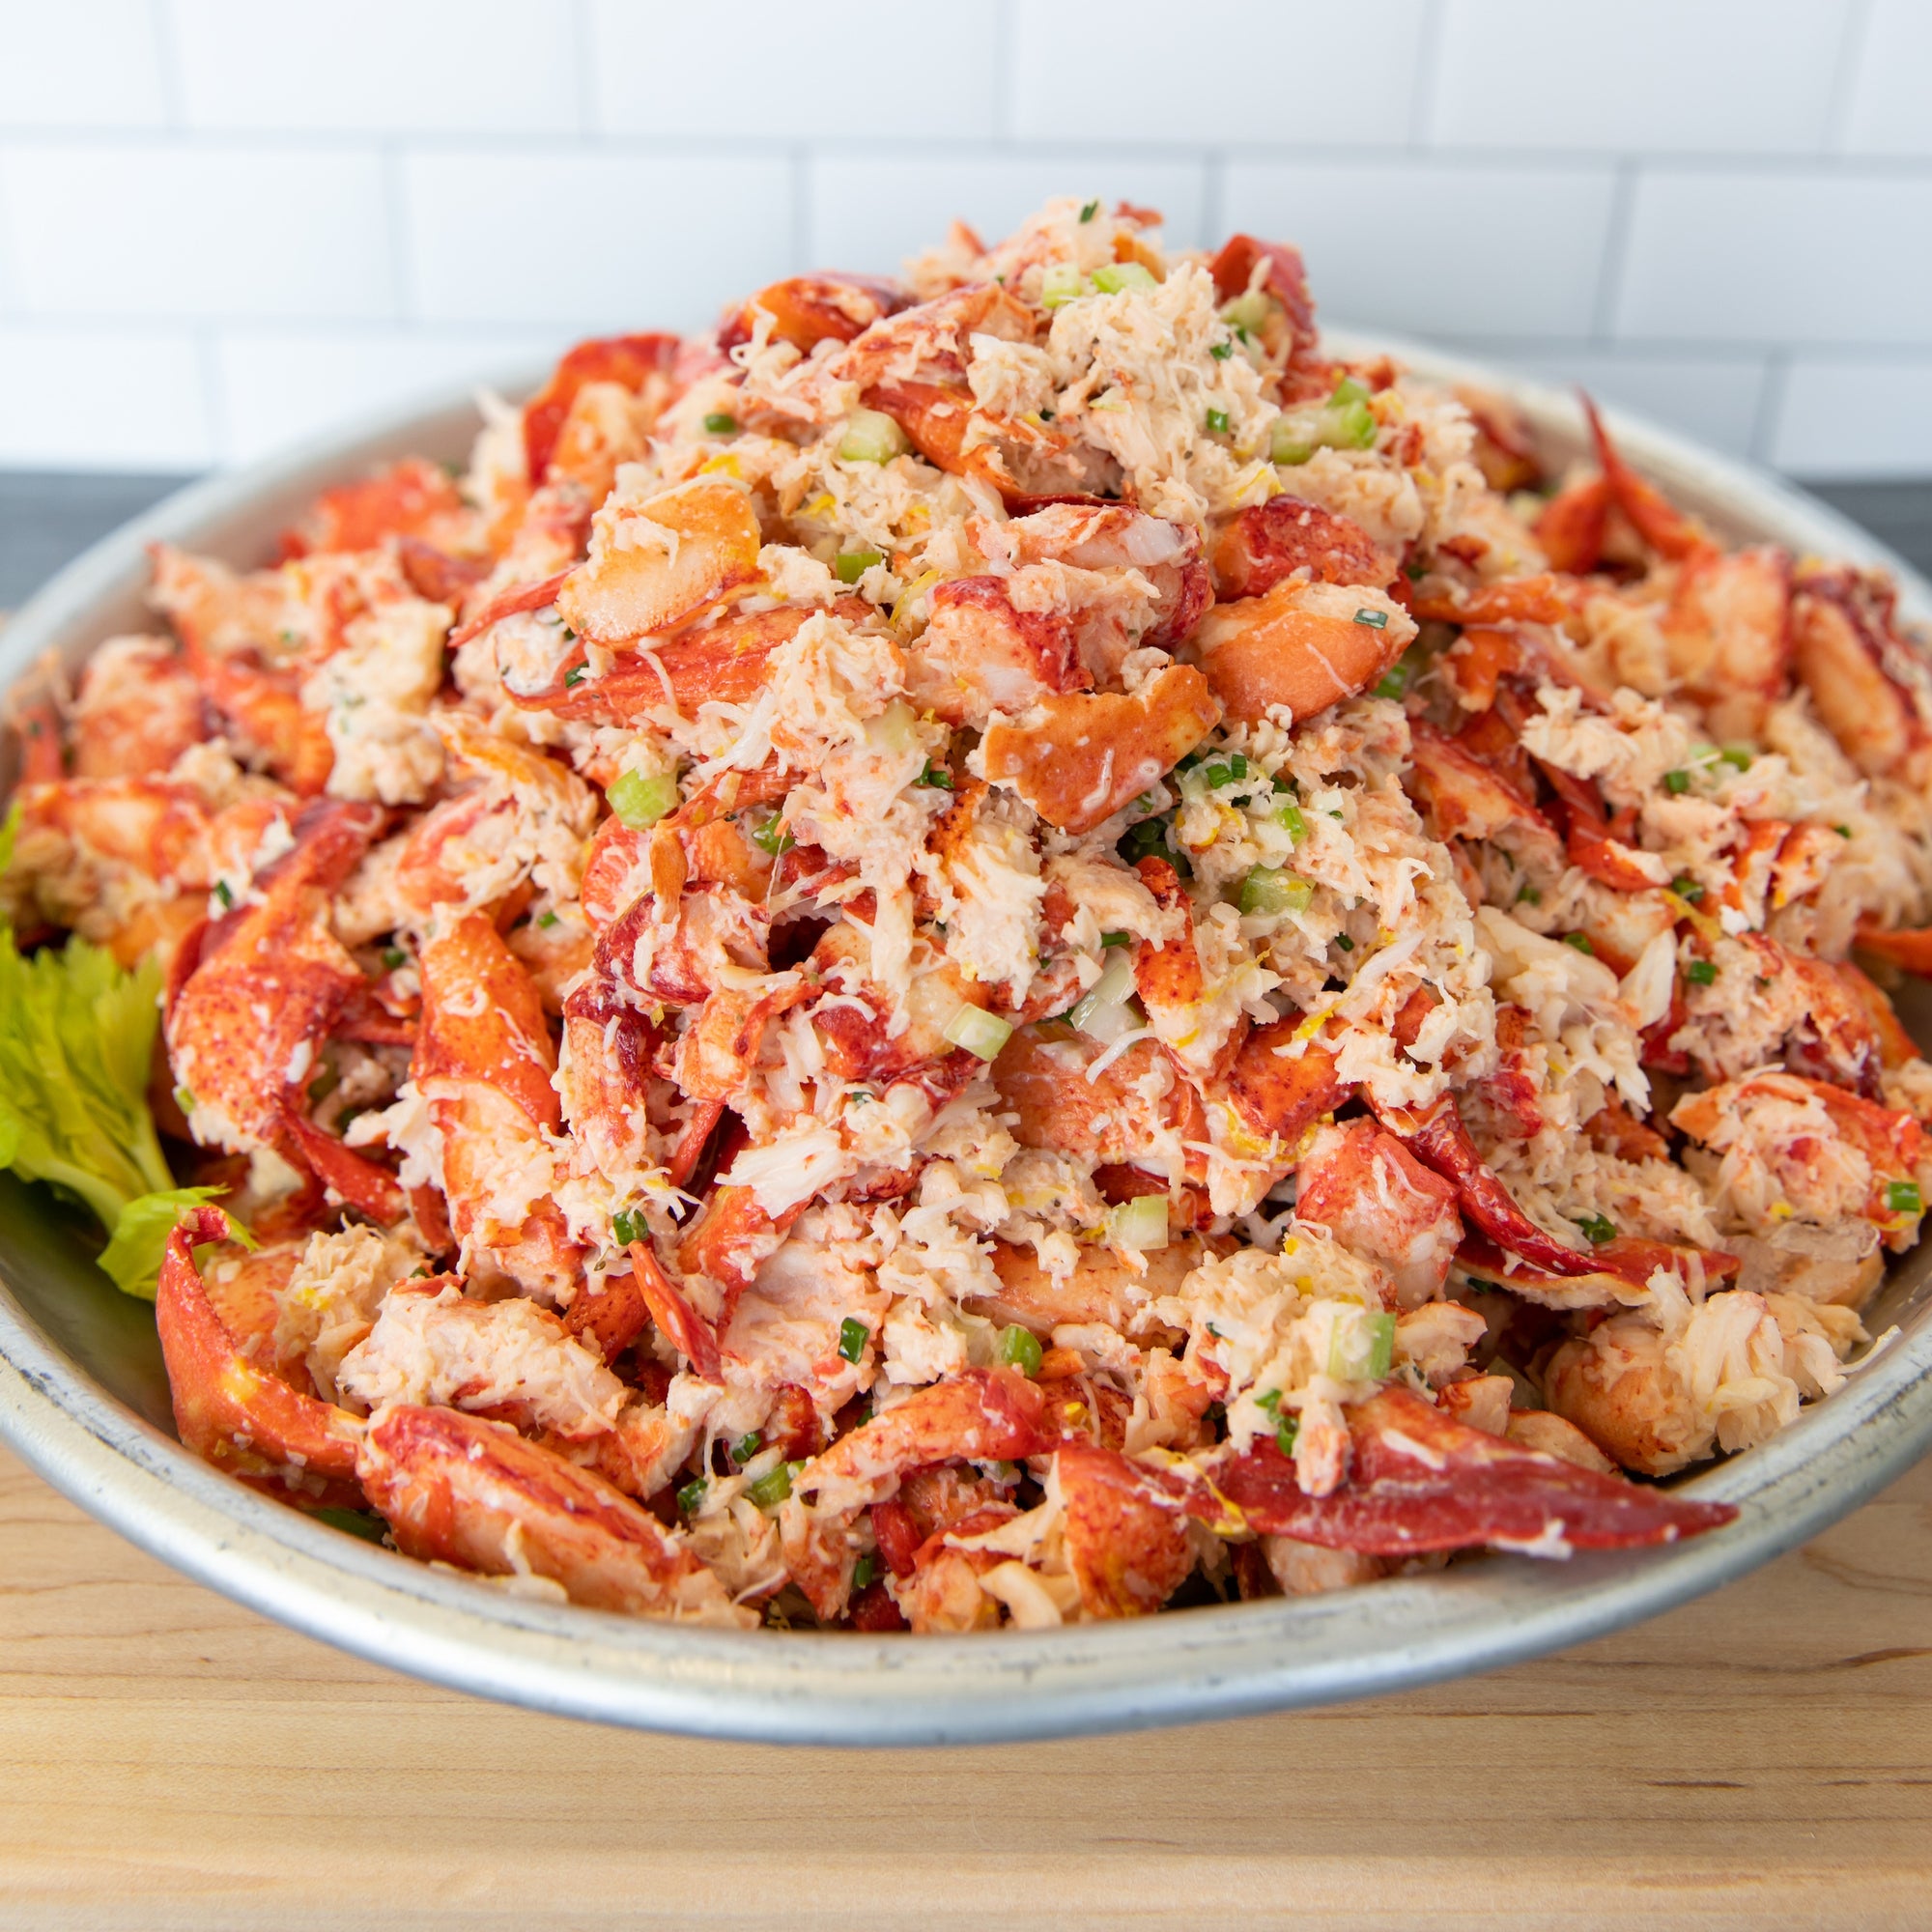 Buy Lobster Salad Online